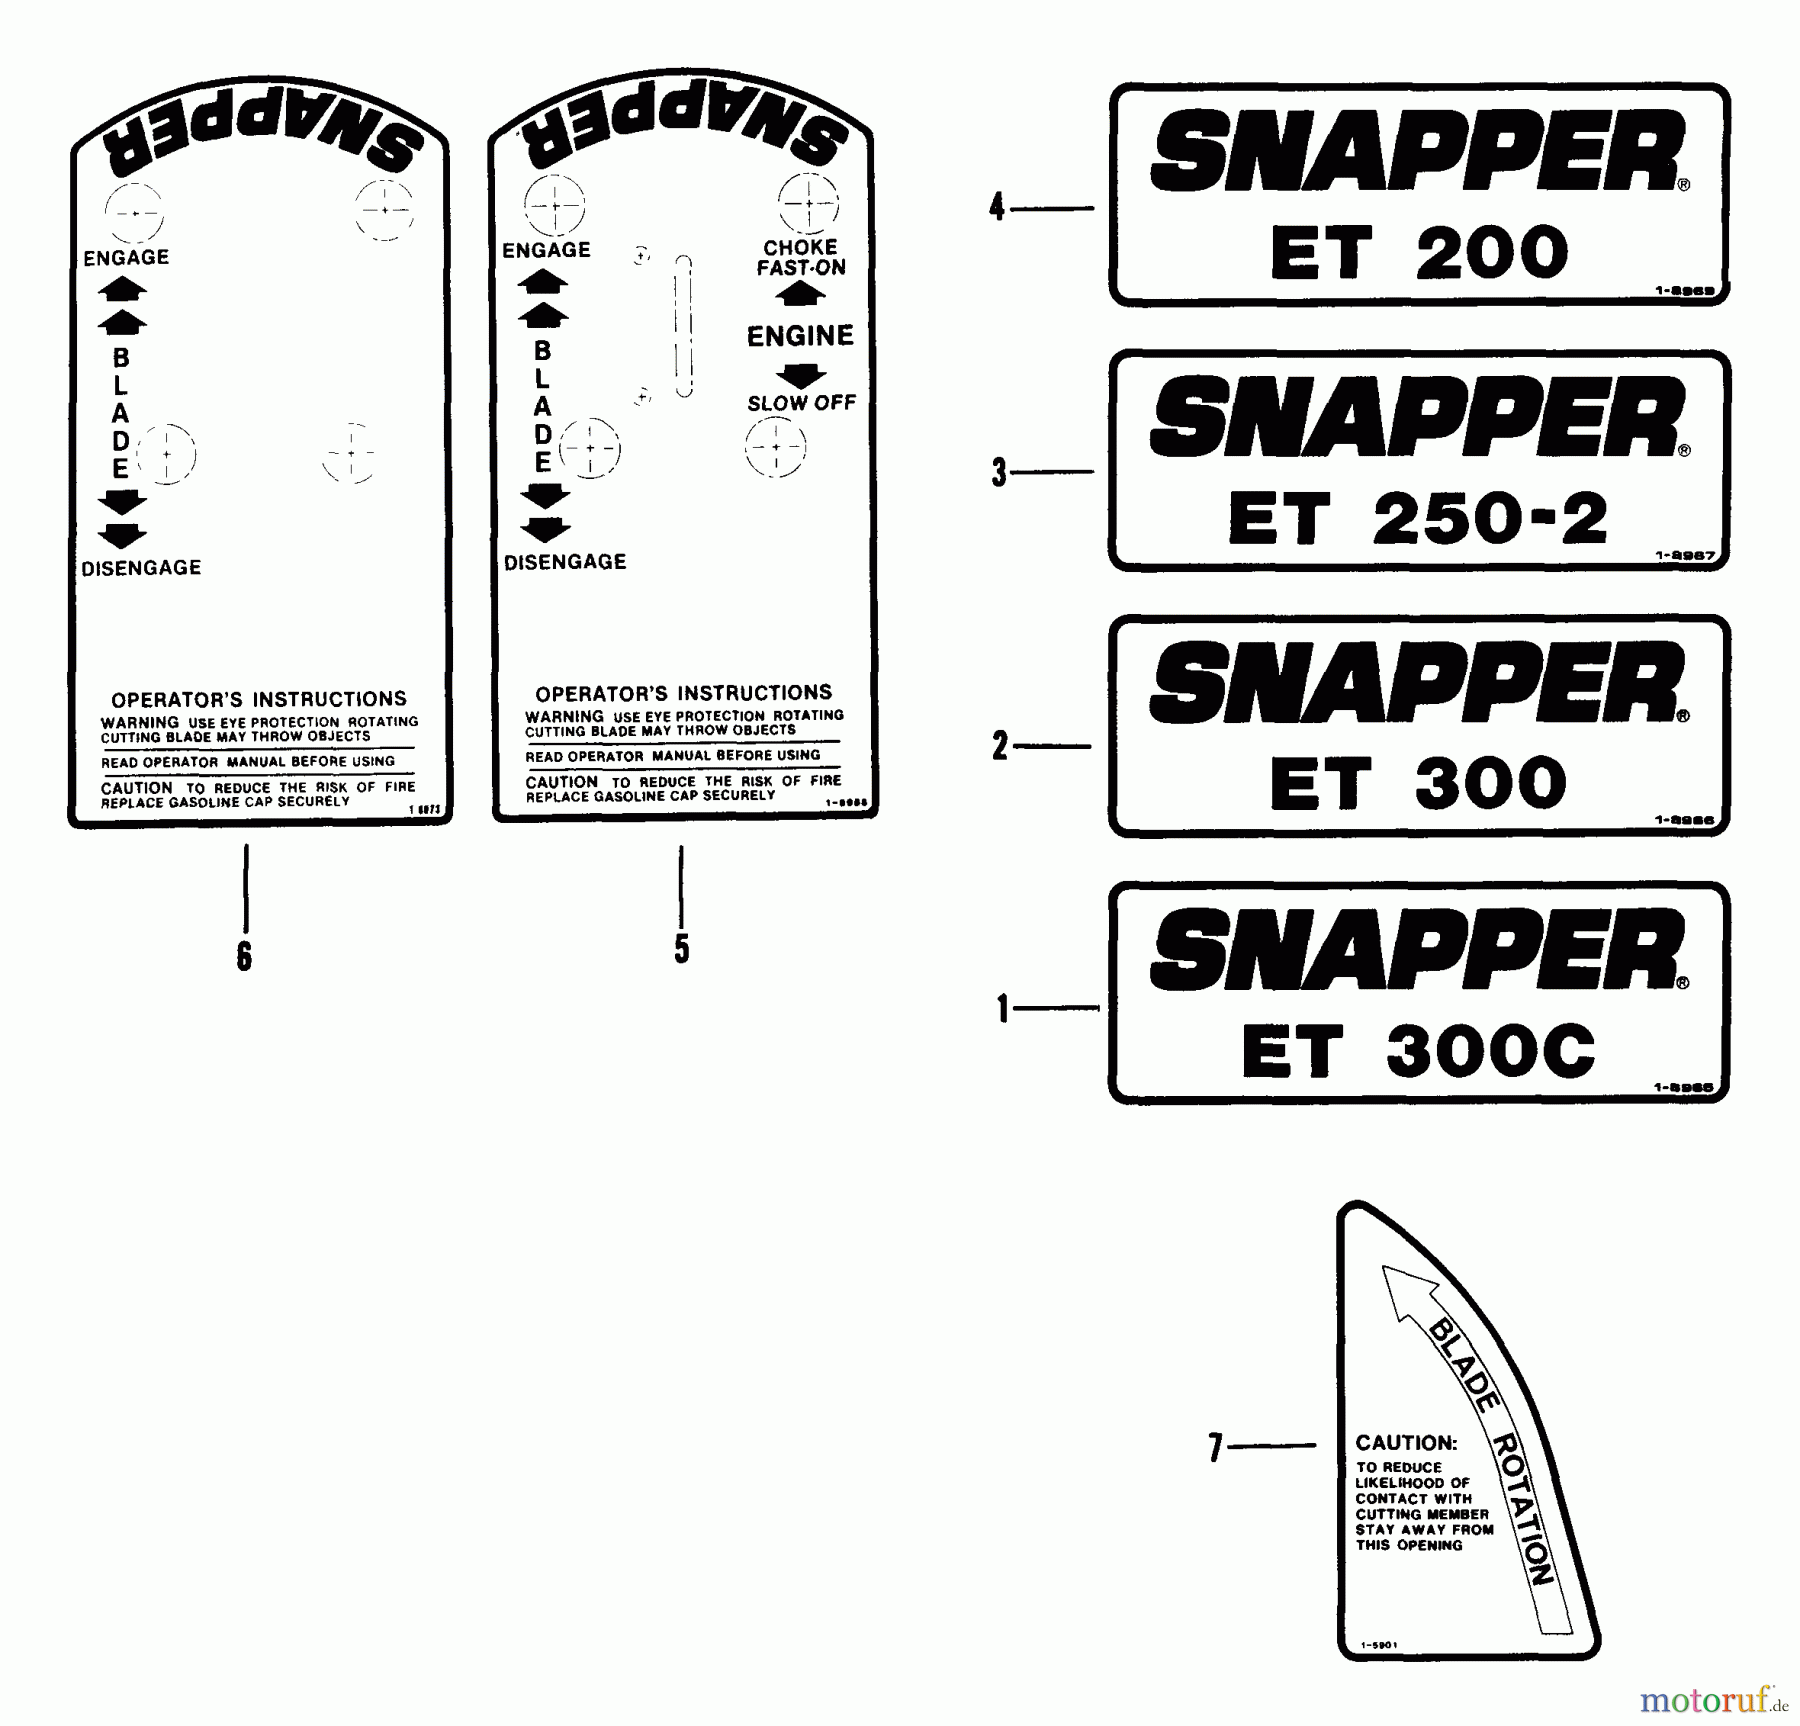  Snapper Kantenschneider ET200 - Snapper Edger Trimmer, 2 HP, Series 0 Decals